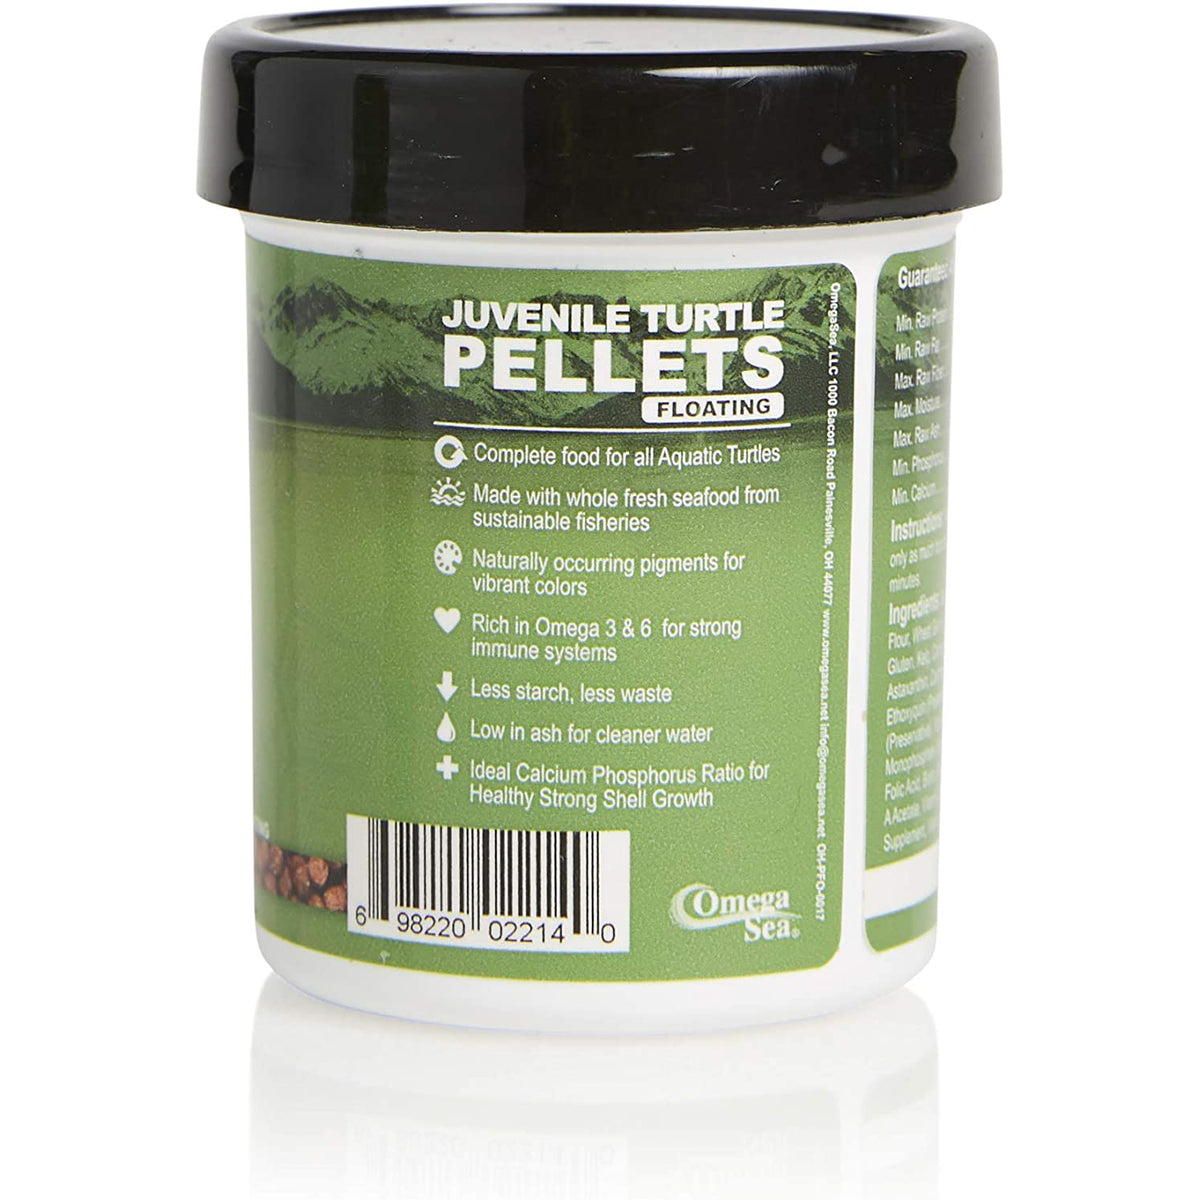 Omega One Juvenile Turtle Pellets label